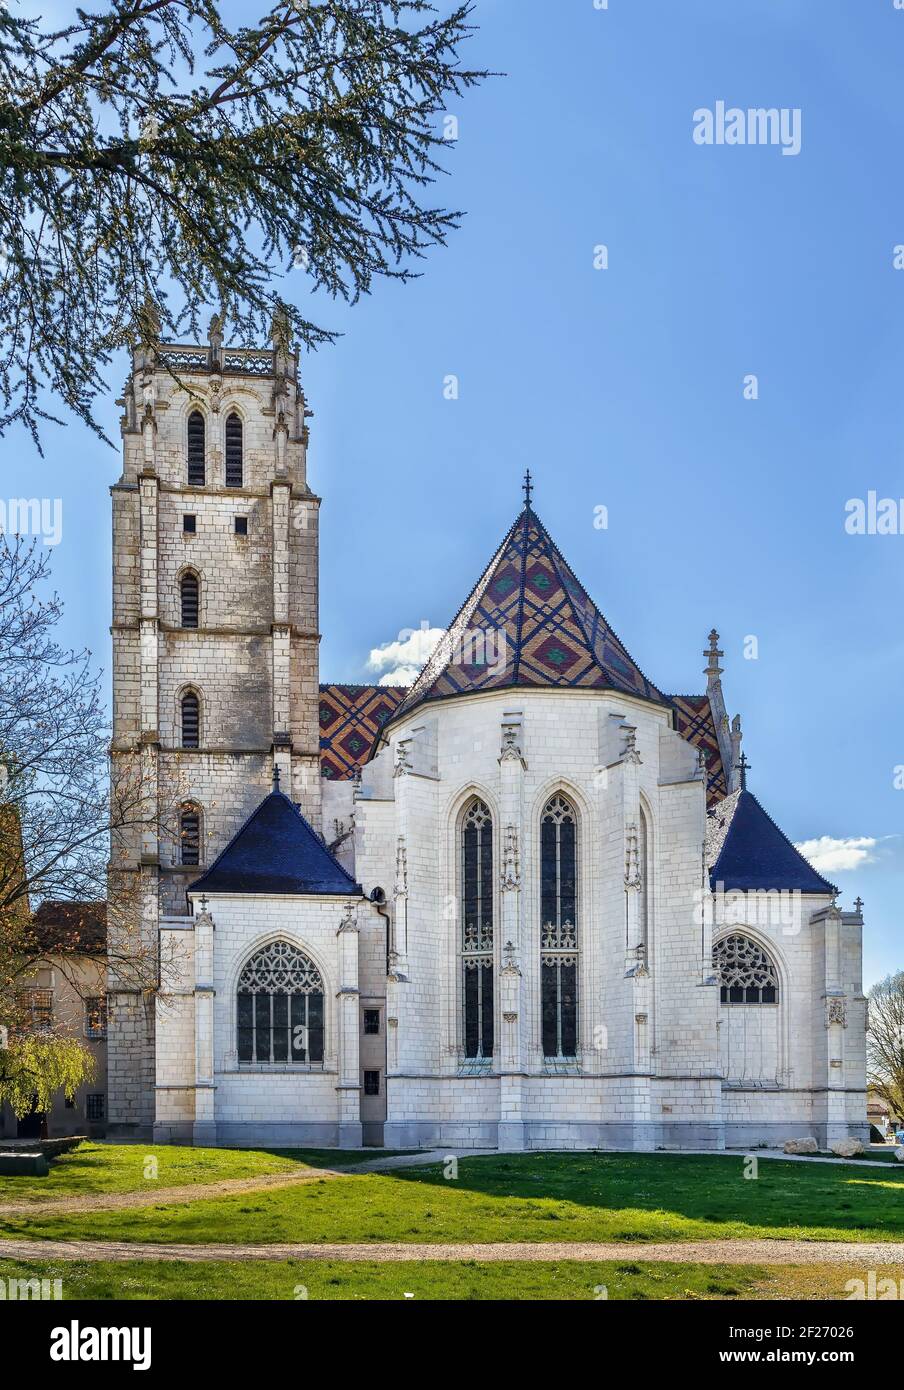 Monastère royal de Brou, Bourg-en-Bresse, France Banque D'Images